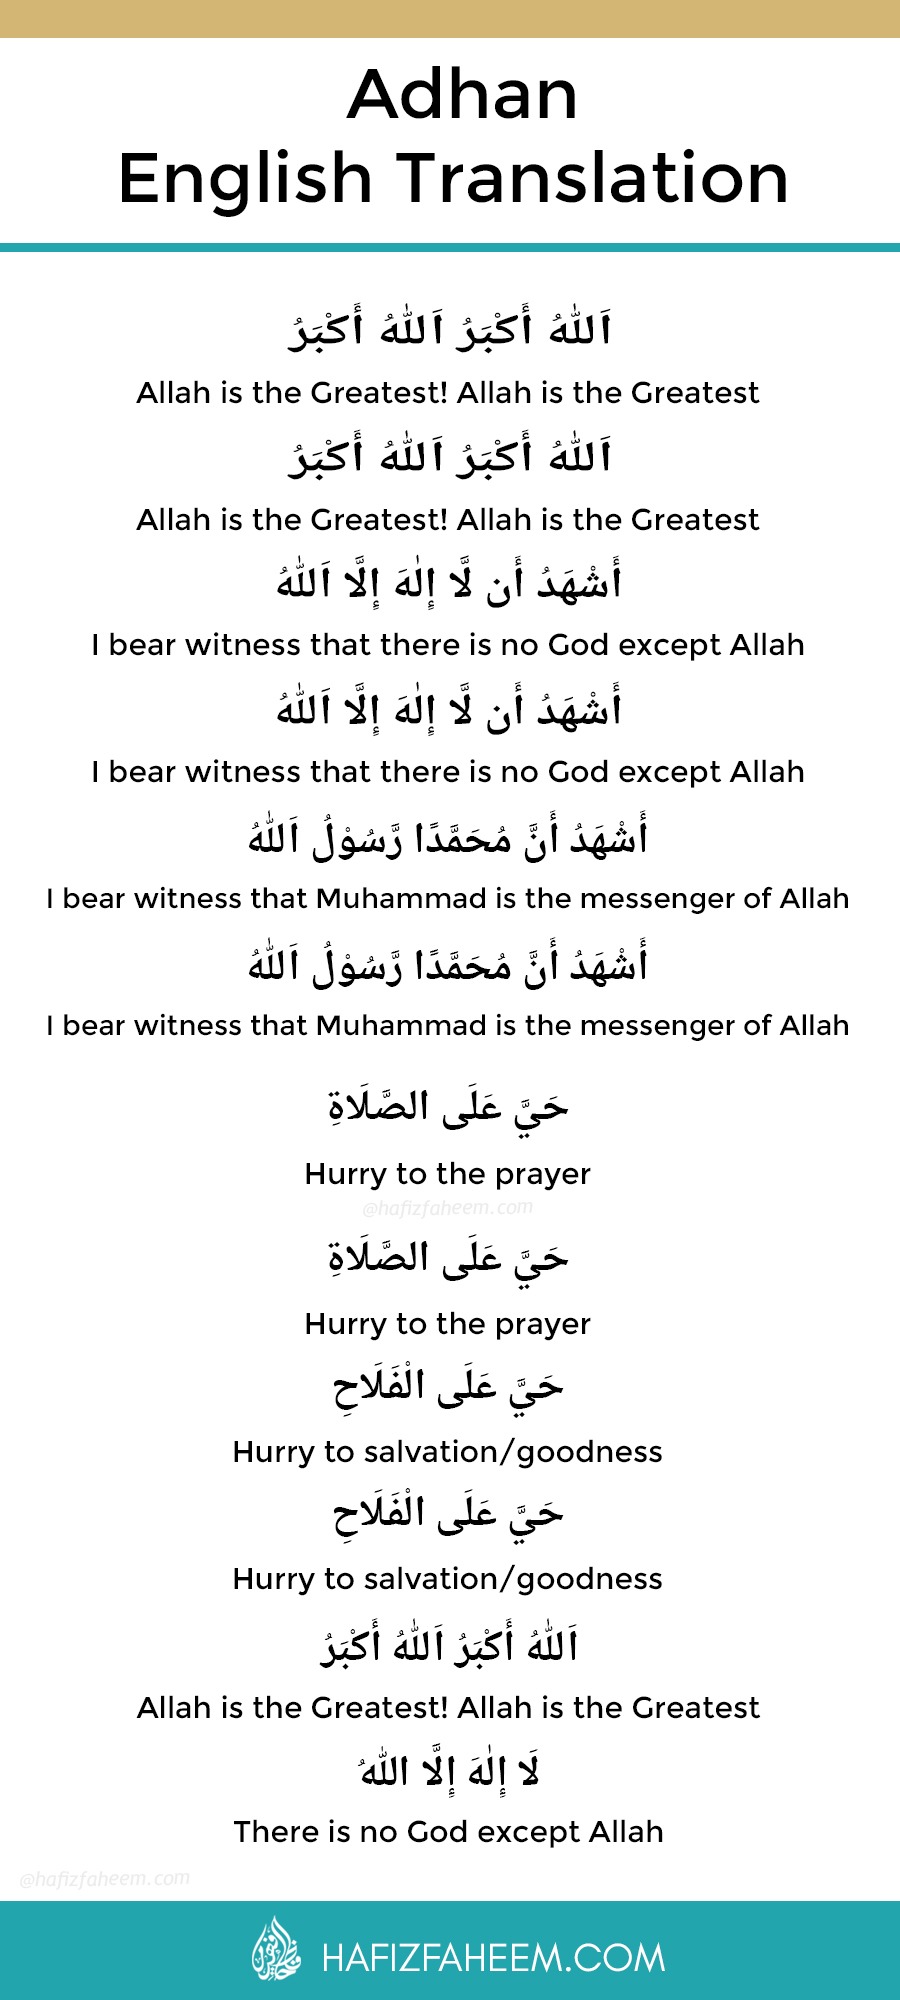 De islamitische oproep tot het gebed (Adhan) vertaald in het Engels